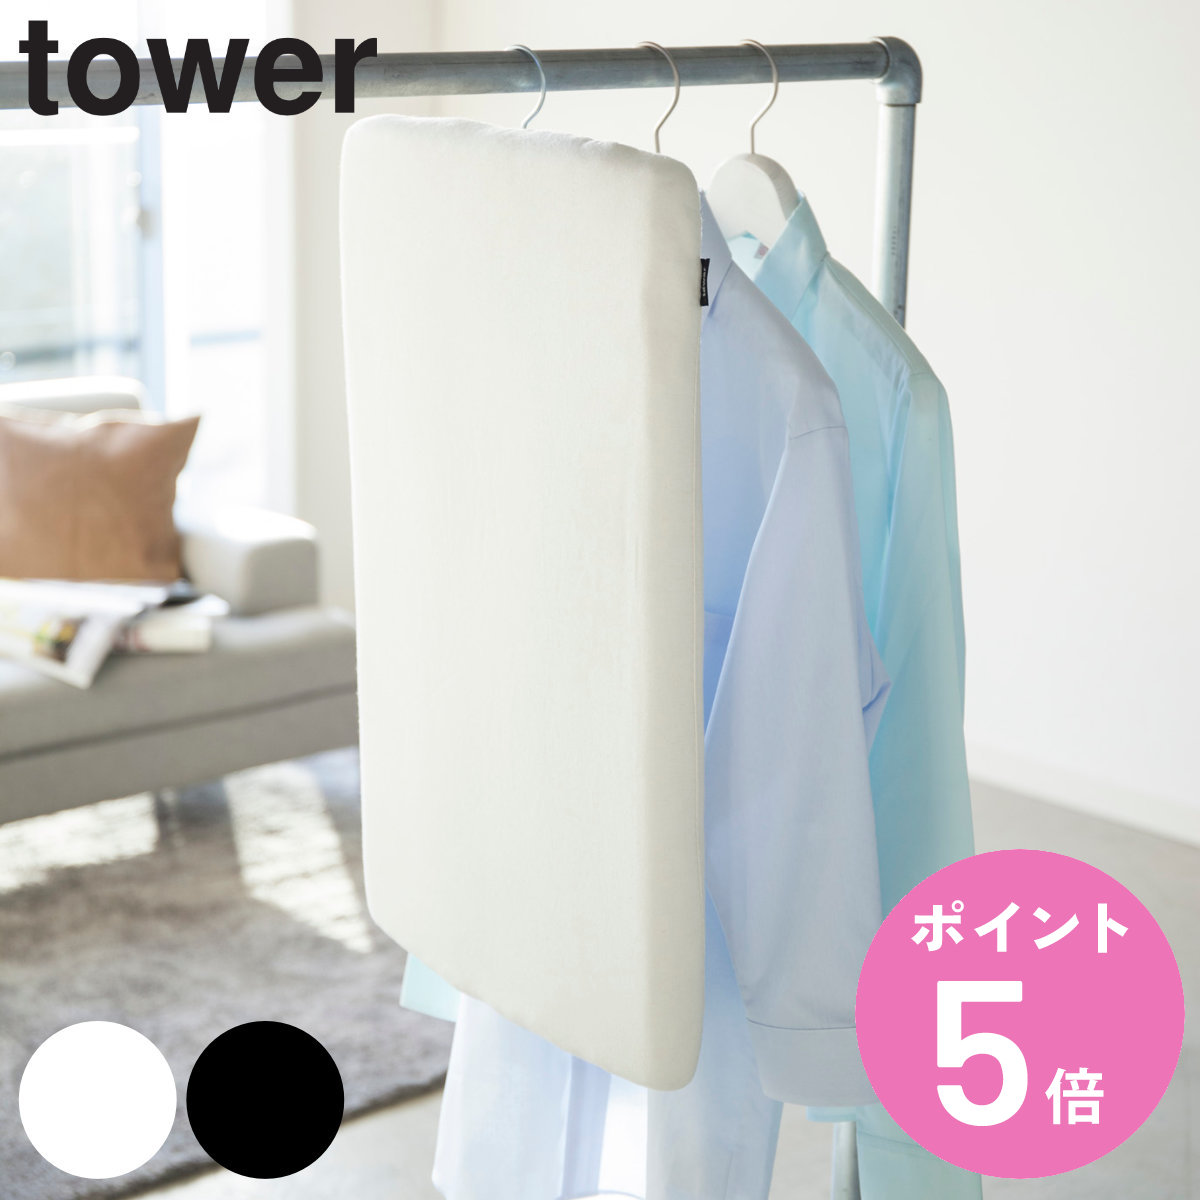 山崎実業 tower スチールメッシュ アイロン台 タワー （ タワーシリーズ 軽量 プレス台 アイロンマット アイロン掛け アルミコート 洗濯